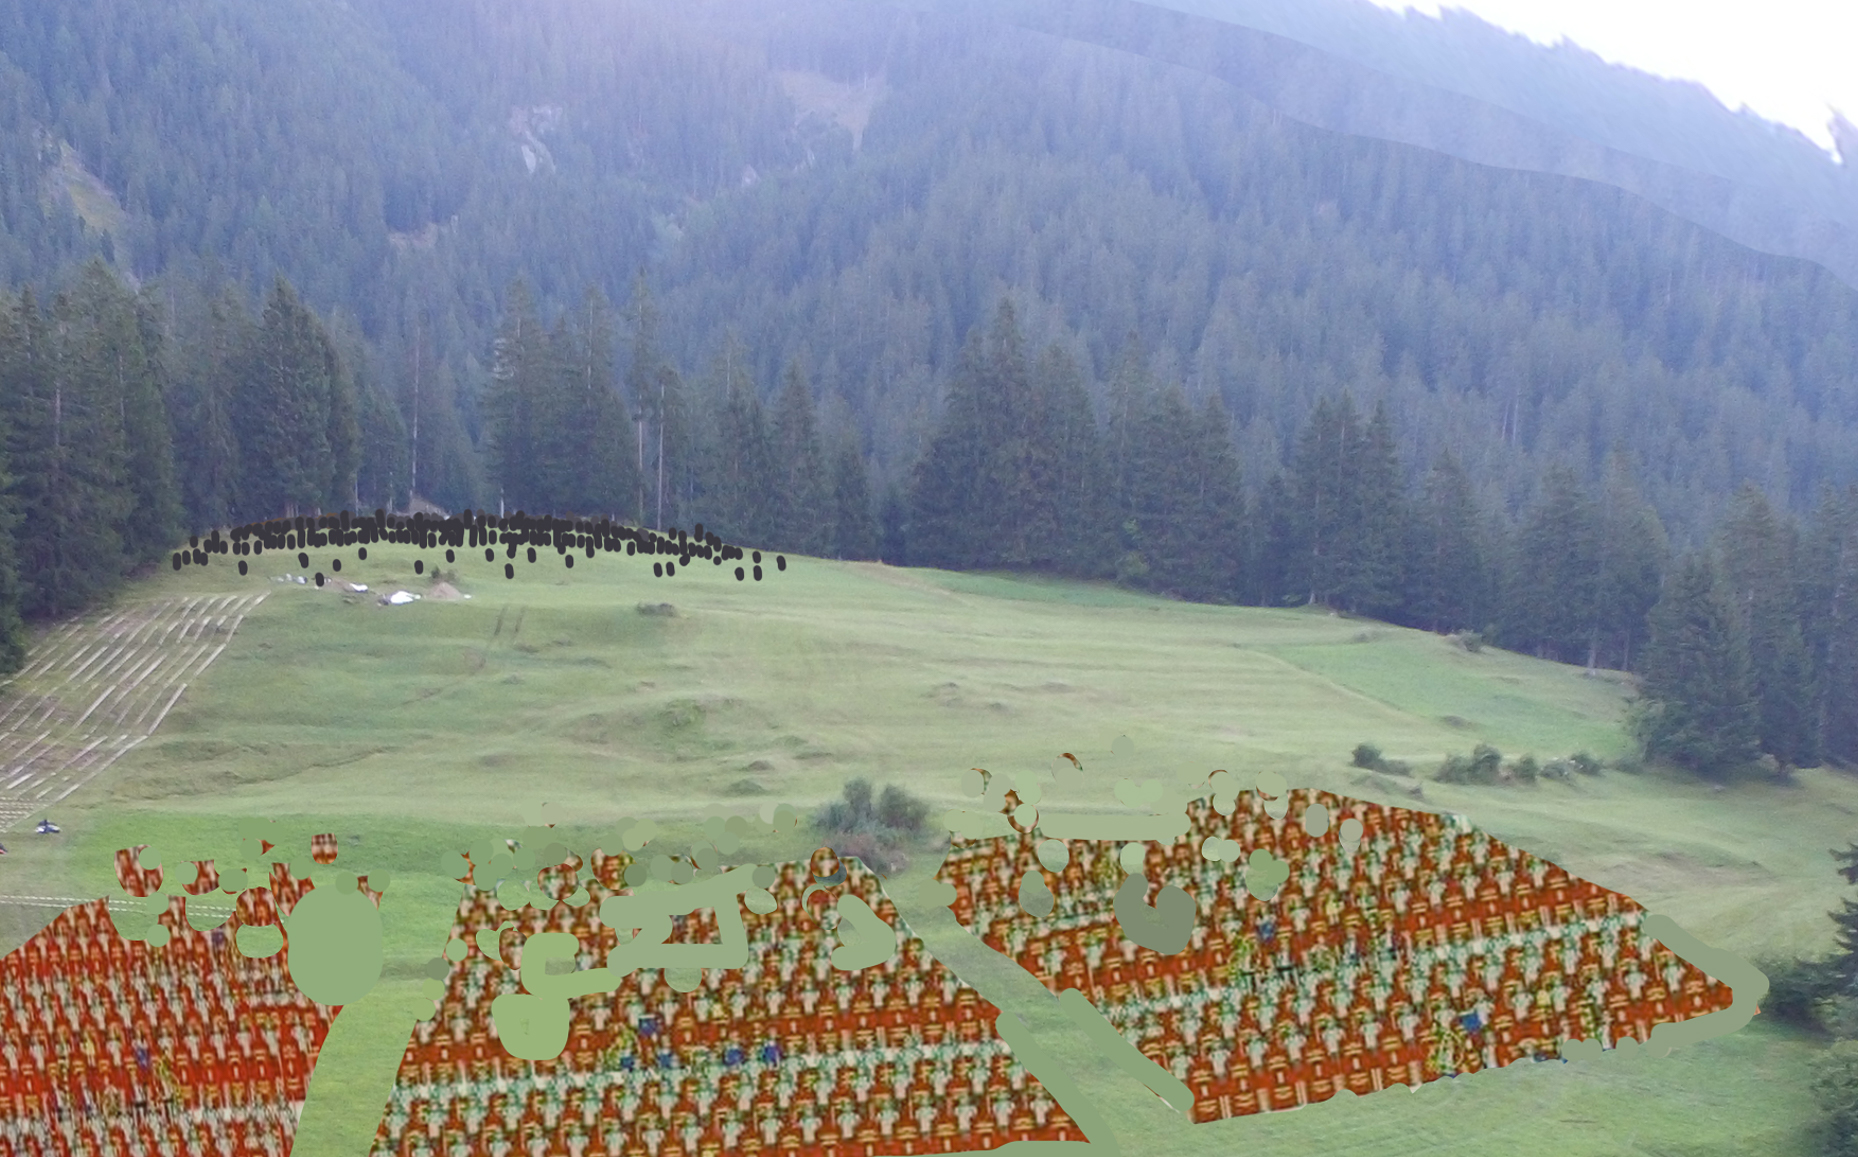 Una colina rodeada de bosques con el contingente romano y en frente los suanetes, de menos cantidad y más dispersados